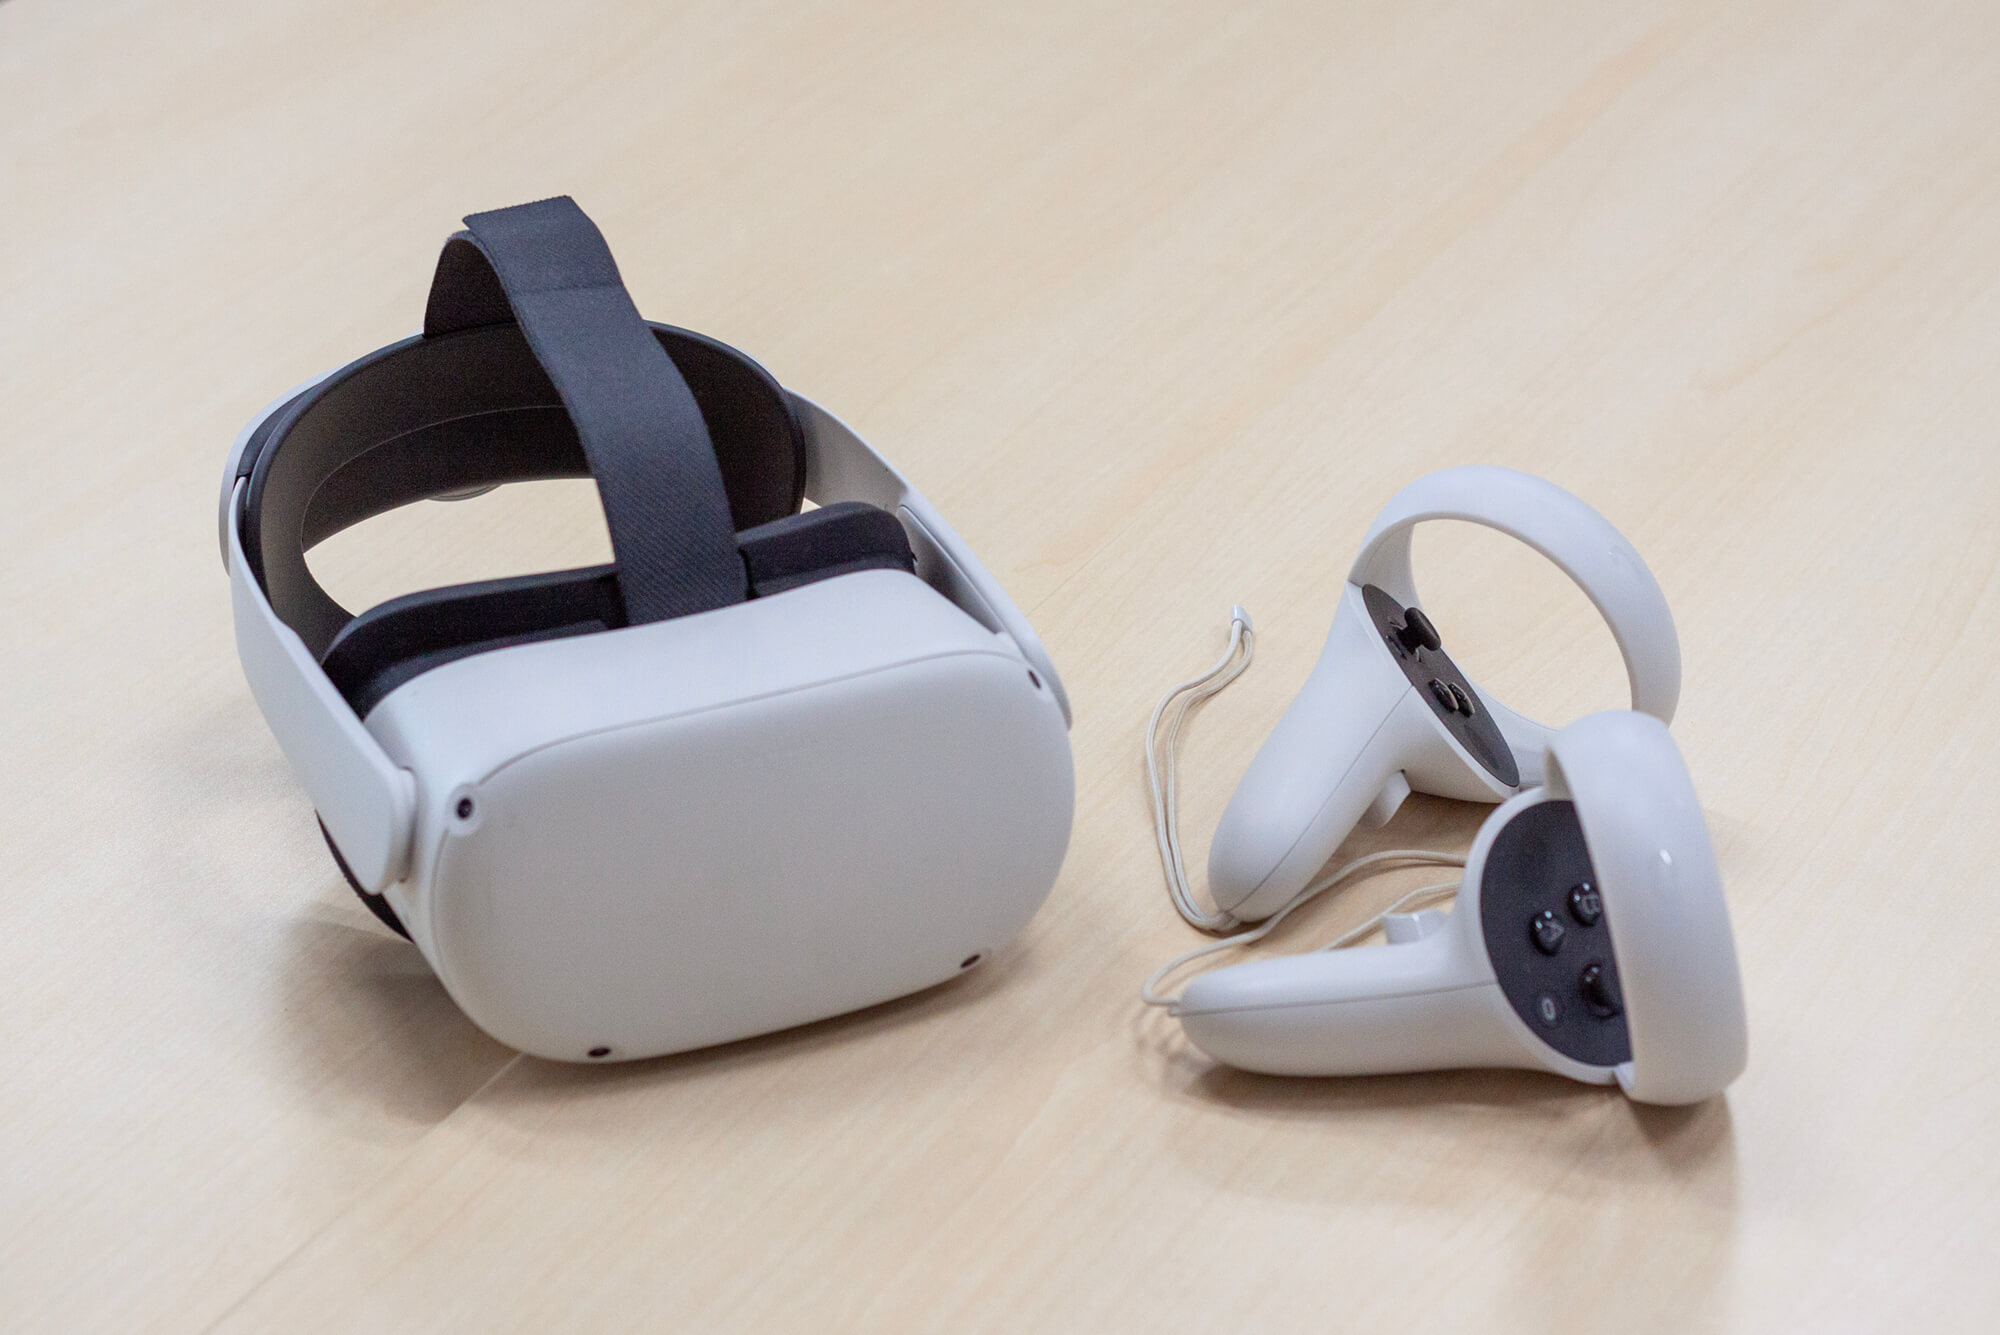 VR空間を体験するために使ったヘッドマウントディスプレイとコントローラー